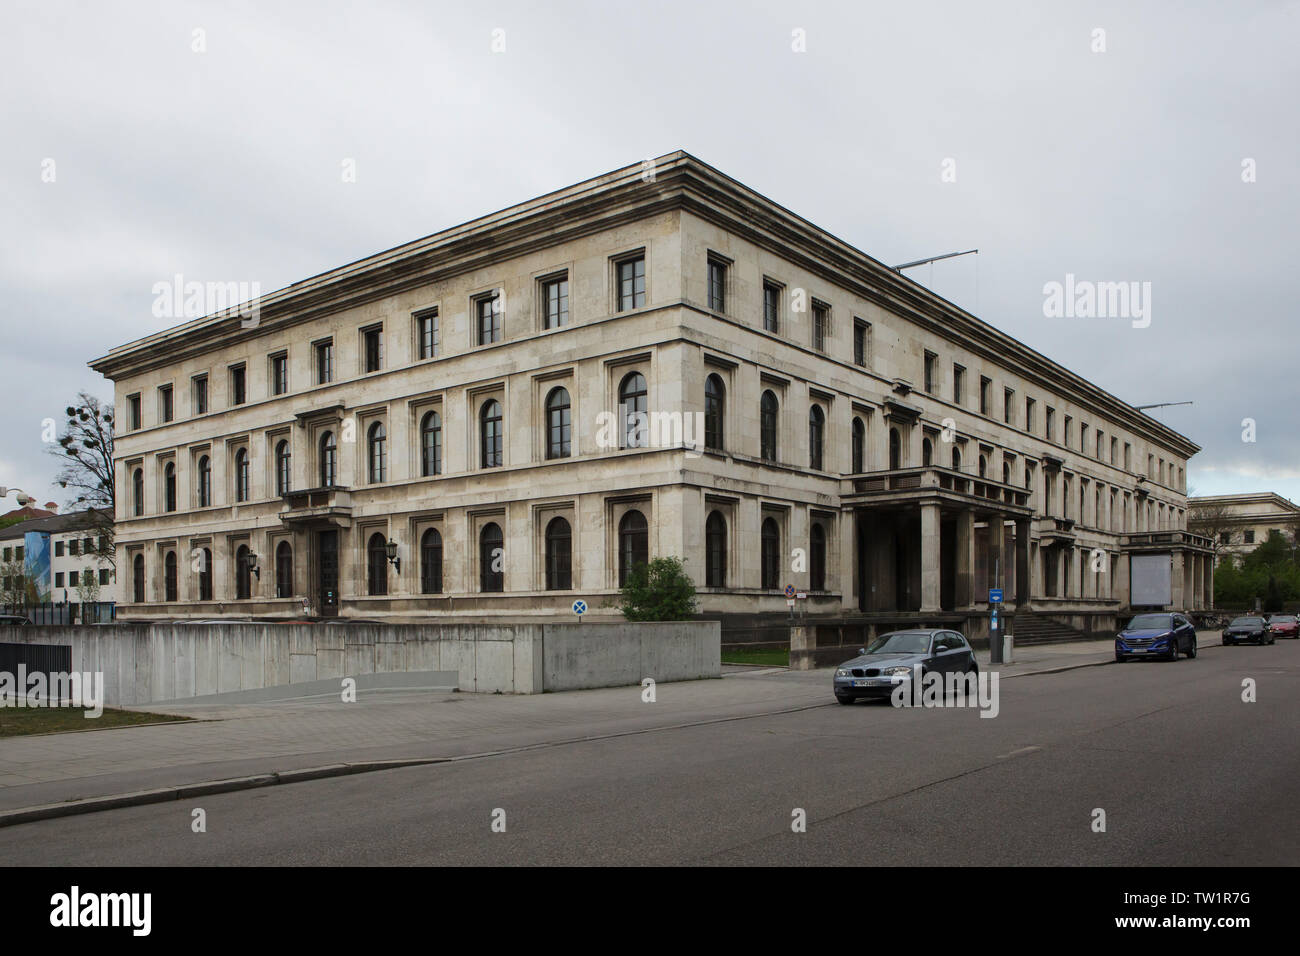 Führerbau (edificio del Führer) diseñado por el arquitecto alemán Paul  Ludwig Troost y construido en 1933-1937 como un edificio representativo de  Adolf Hitler, ahora la Universidad de Música y Artes Escénicas (Hochschule